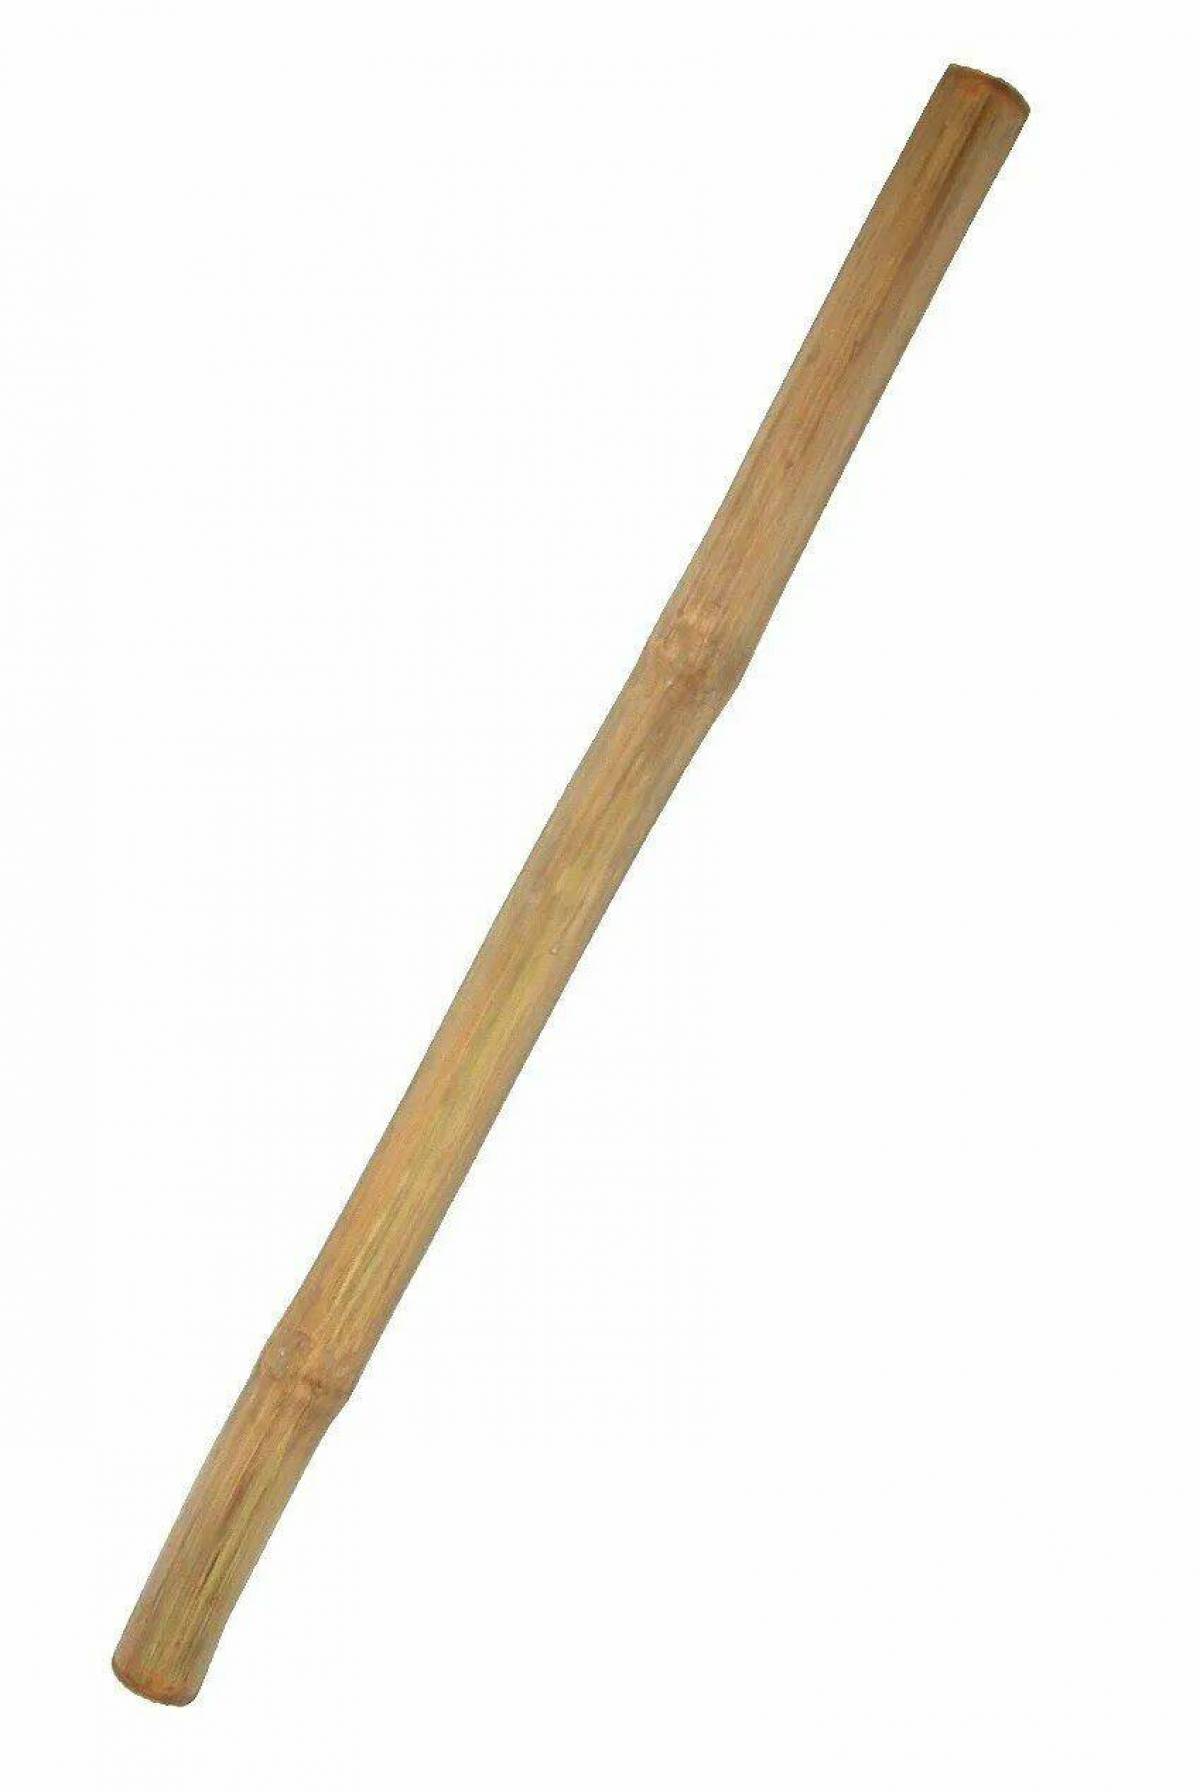 A wooden stick. Палка. Палка деревянная. Деревянные палочки. Деревянная палка на прозрачном фоне.